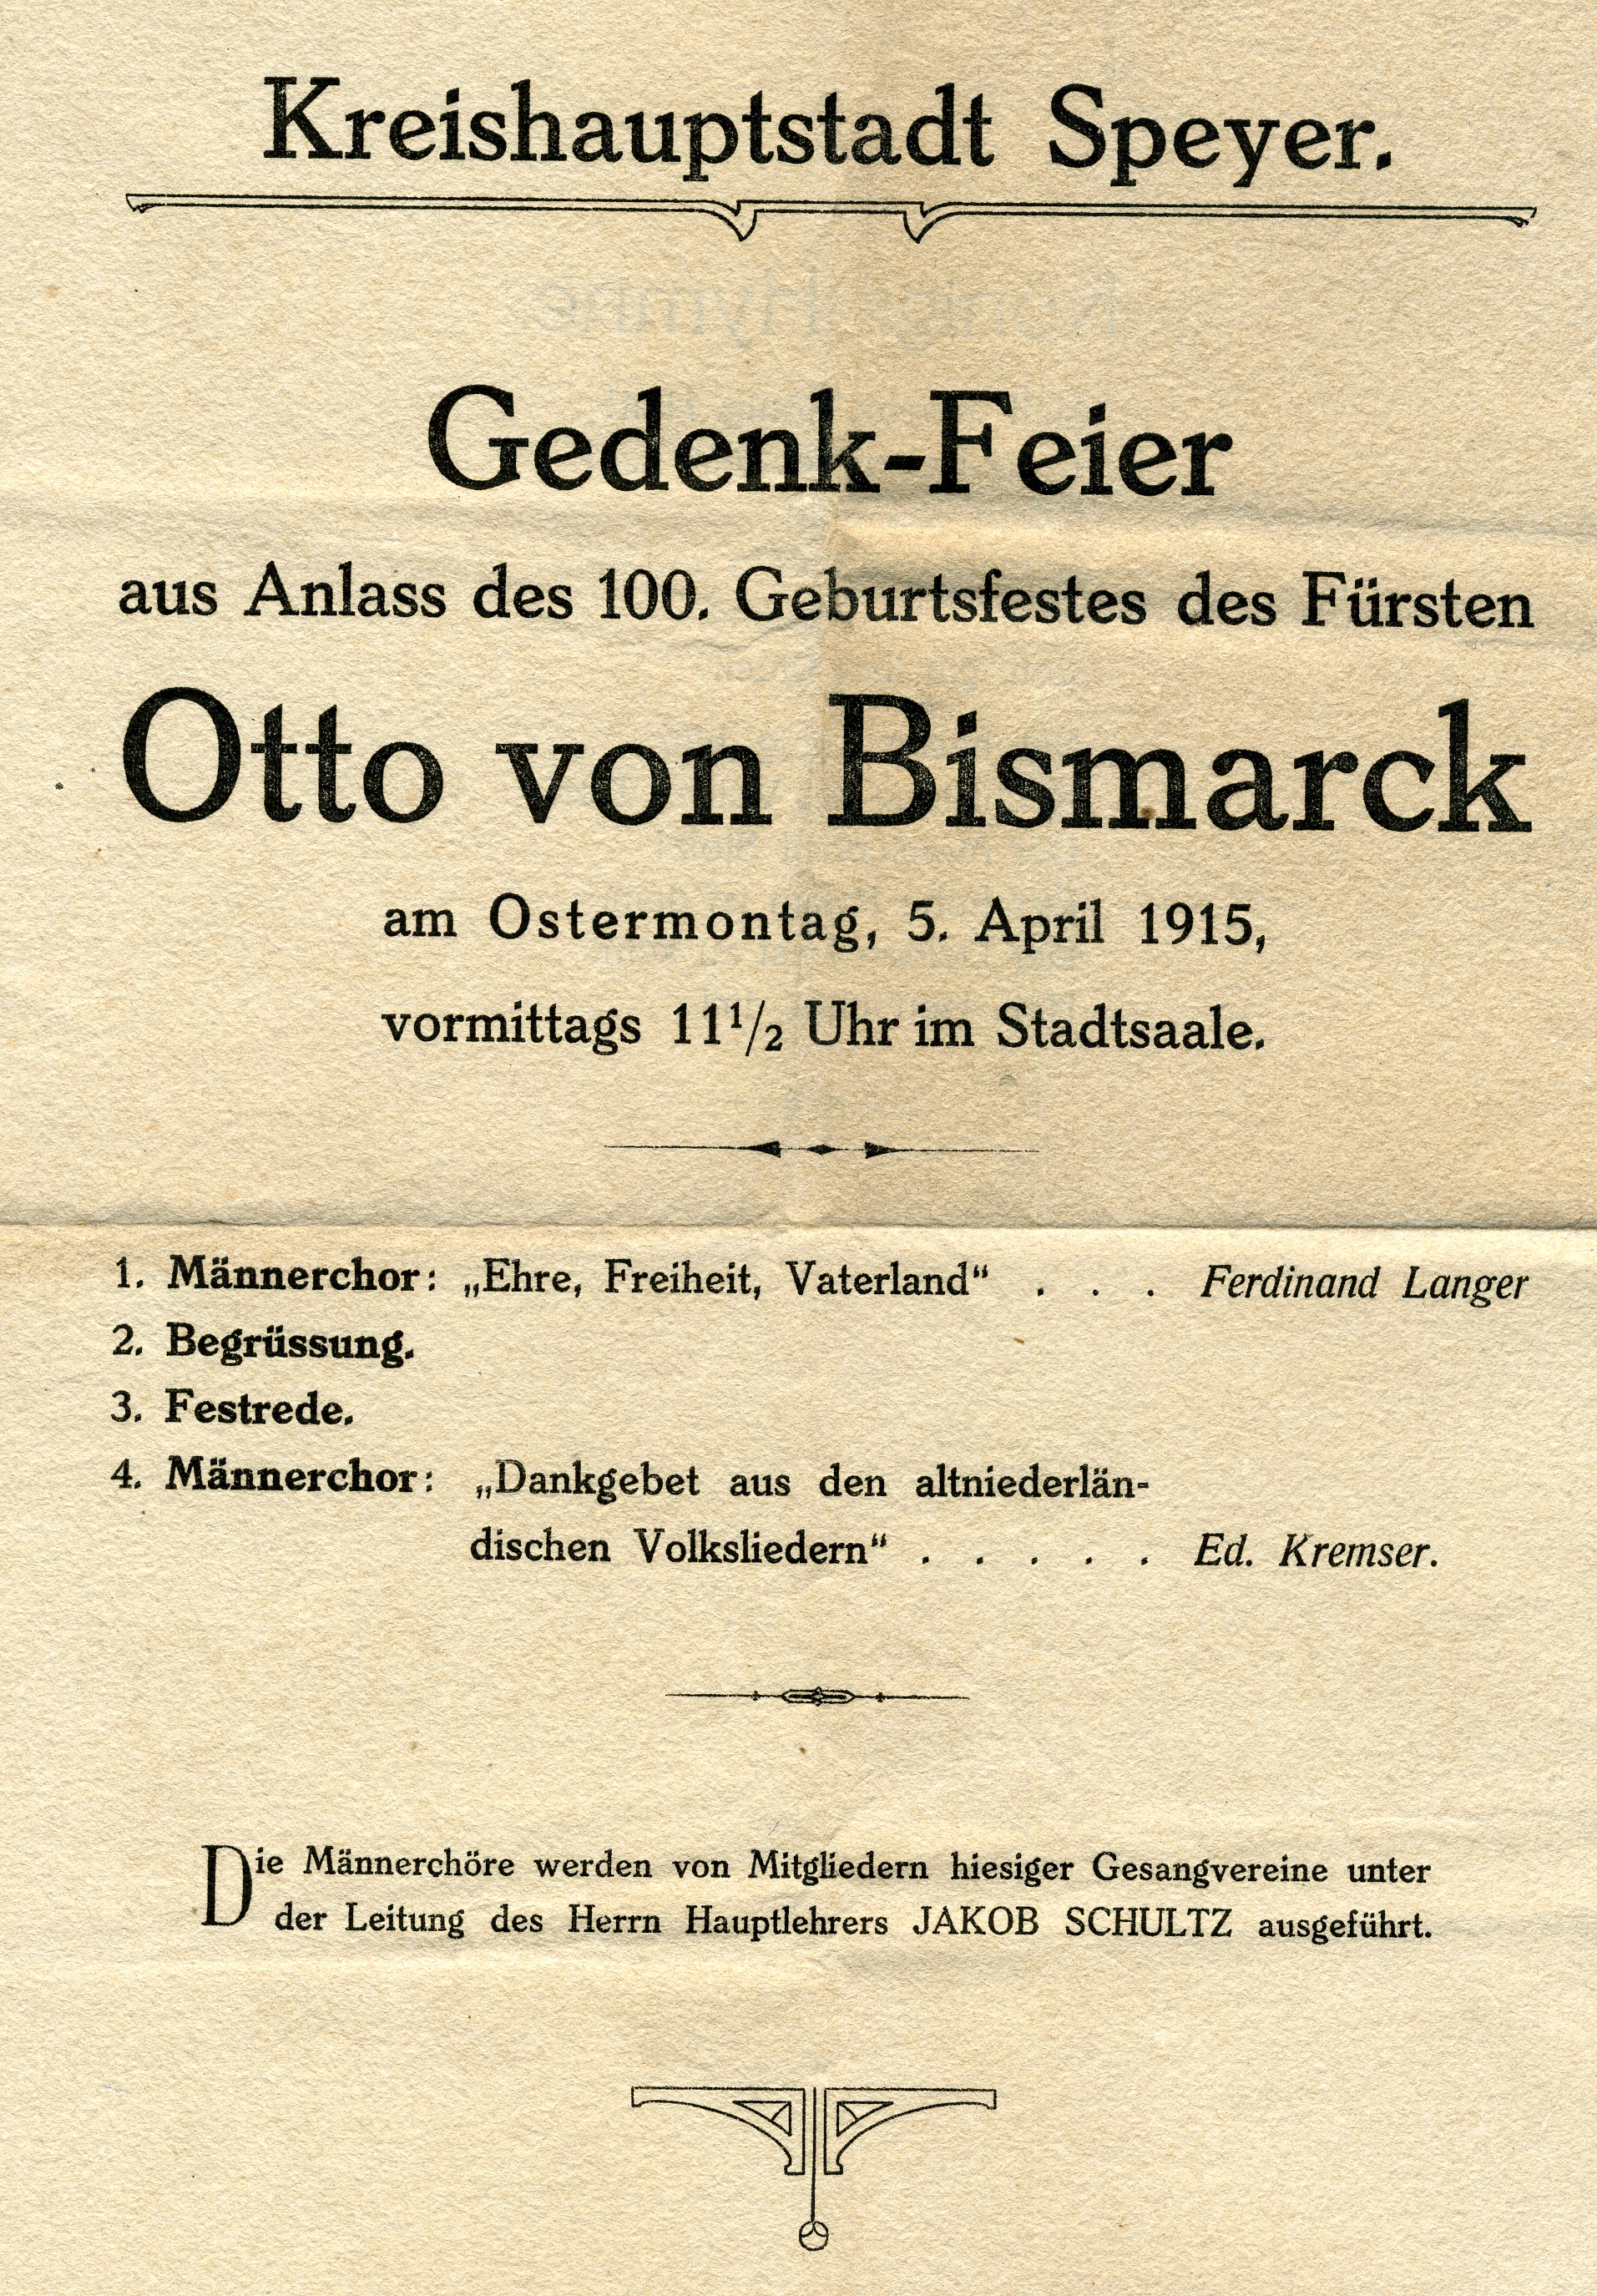 Einladung zur Gedenkfeier "100. Geburtsfest Otto von Bismarck" (Historisches Museum der Pfalz, Speyer CC BY)